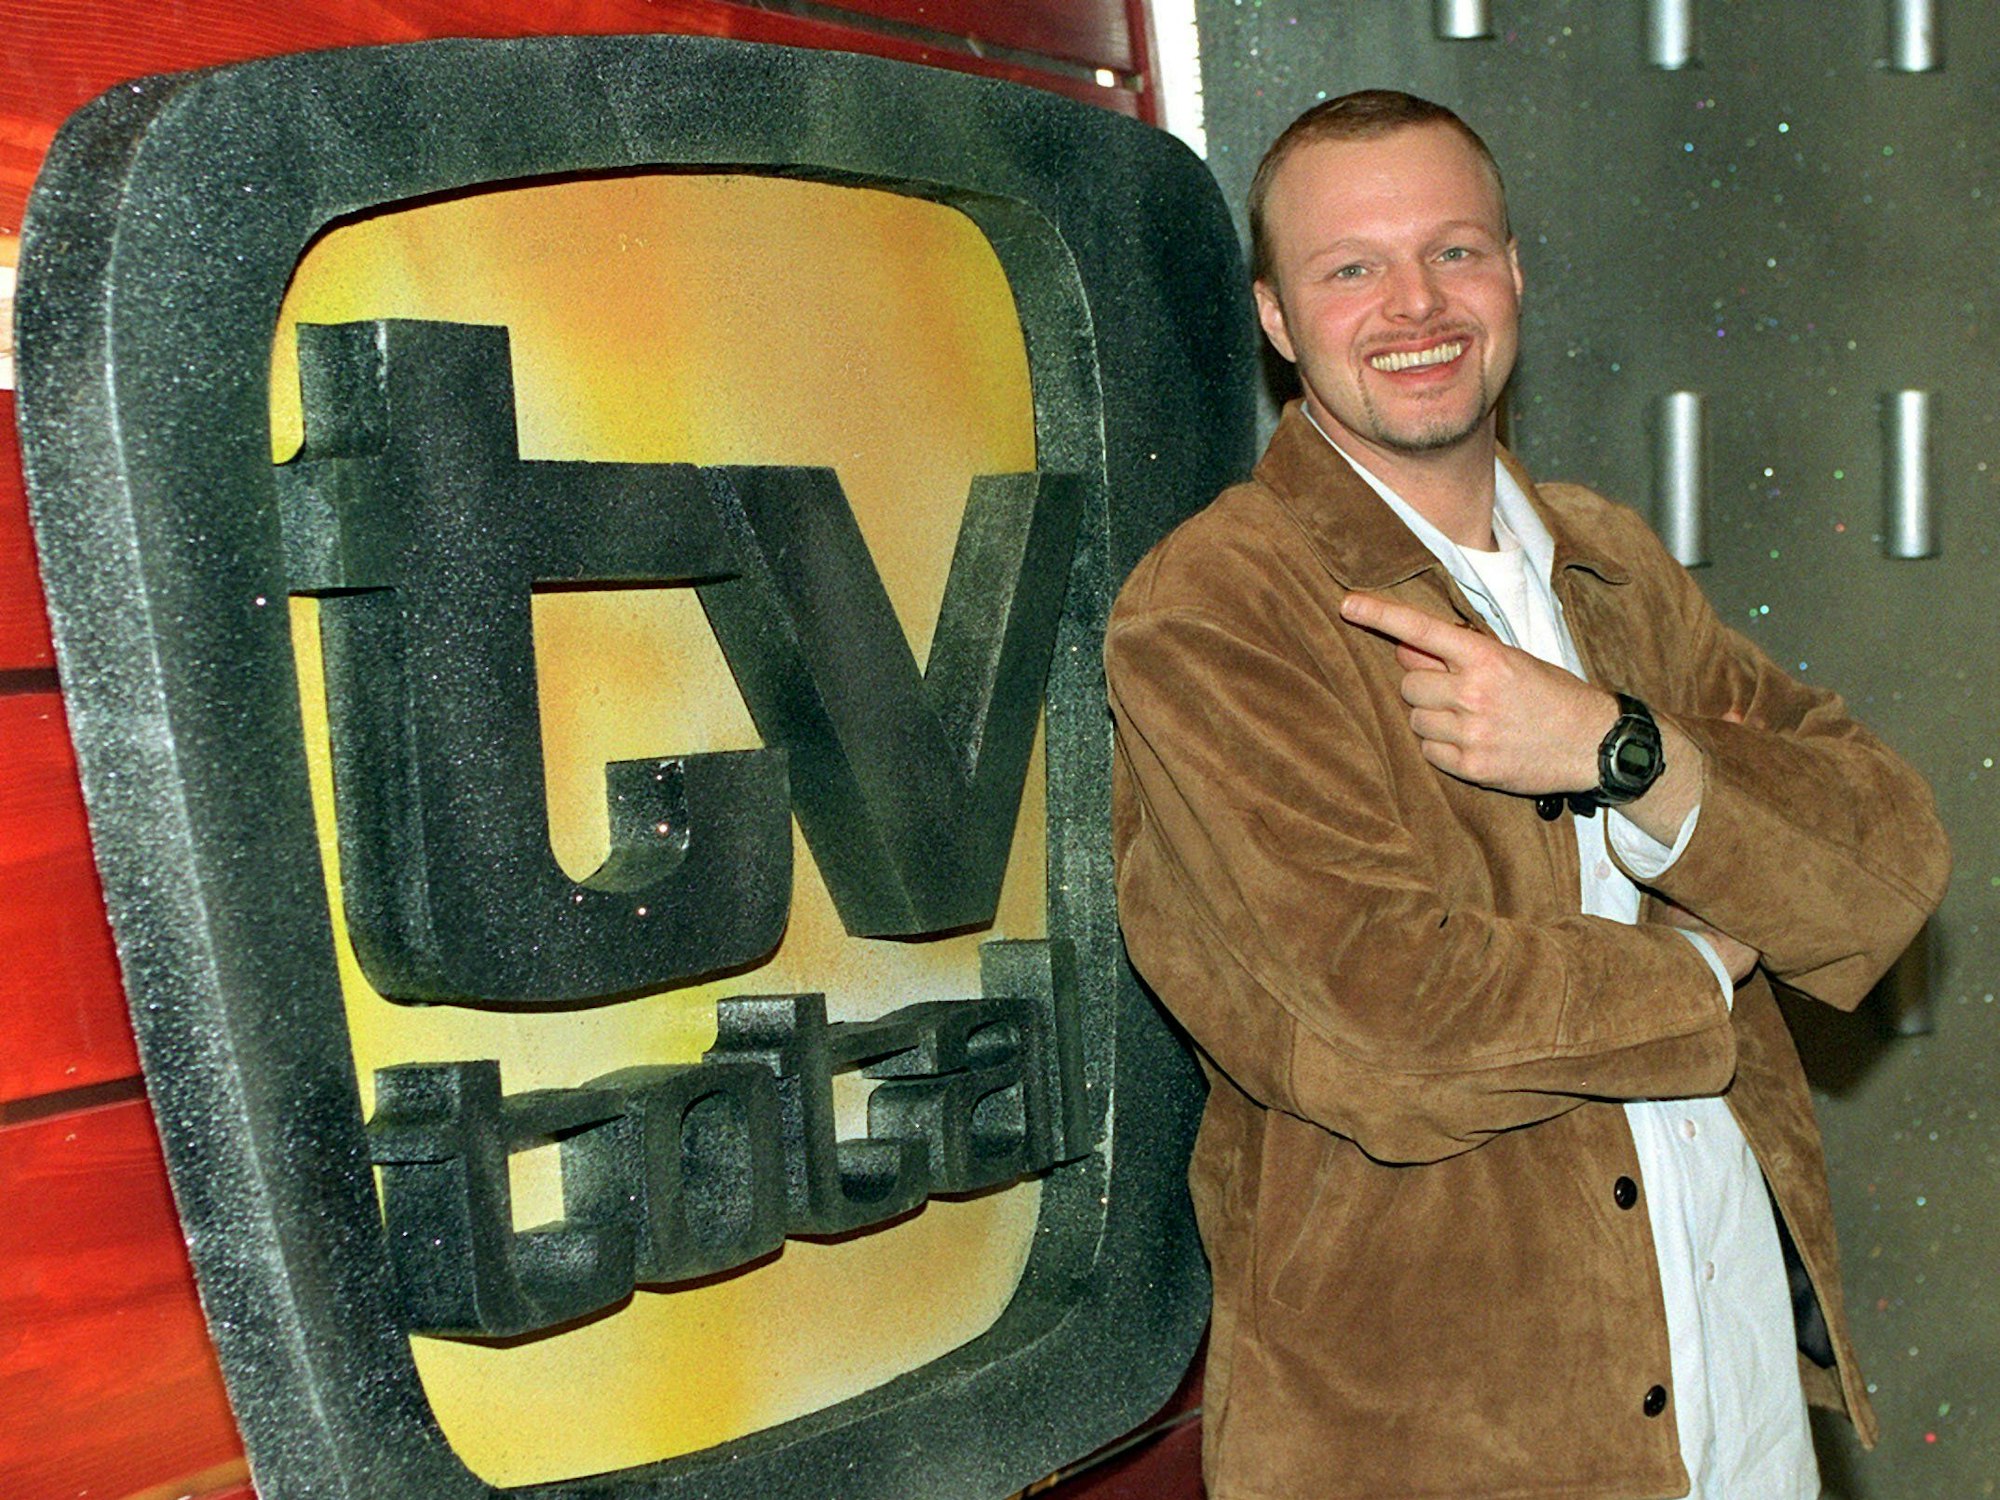 Stefan Raab zeigt auf das Logo seiner Entertainment-Show „TV total“.